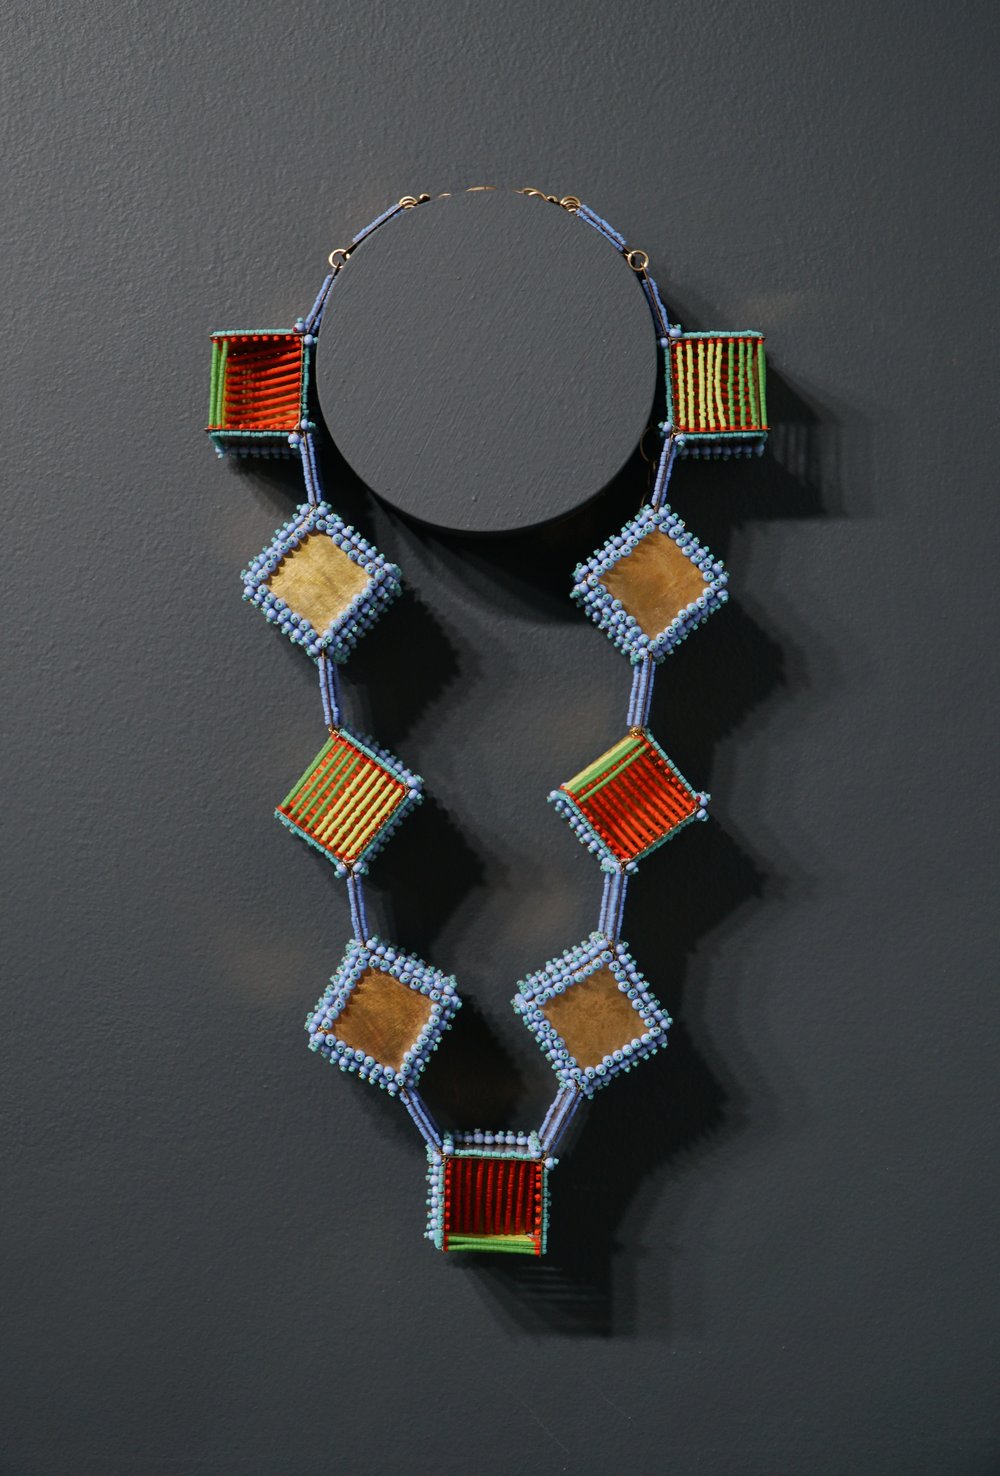 Hilary Hertzler, Cubic Necklace